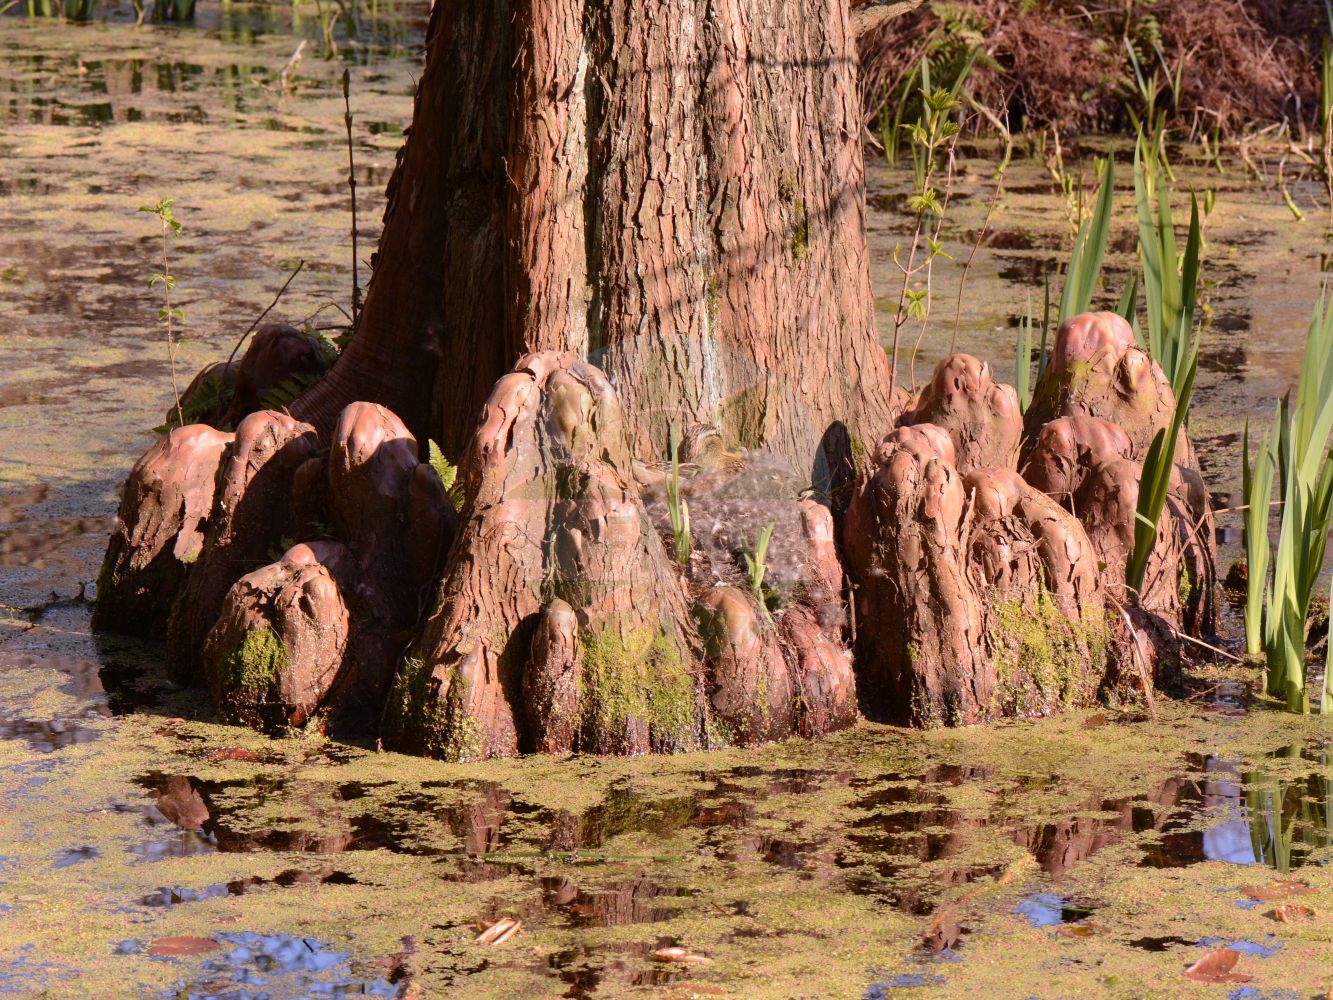 Foto von Taxodium distichum (Echte Sumpfzypresse - Swamp Cypress). Das Bild zeigt Stamm und Wurzel. Das Foto wurde in Bochum, Nordrhein-Westfalen, Deutschland aufgenommen. ---- Photo of Taxodium distichum (Echte Sumpfzypresse - Swamp Cypress). The image is showing stem and root. The picture was taken in Bochum, North Rhine-Westphalia, Germany.(Taxodium distichum,Echte Sumpfzypresse,Swamp Cypress,Cupressus disticha,Taxodium distichum,Echte Sumpfzypresse,Swamp Cypress,American Bald Cypress,Pond Cypress,Bald Cypress,Gulf Cypress,Red Cypress,Southern Cypress,Yellow Cypress,Taxodium,Sumpfzypresse,Bald Cypress,Cupressaceae,Zypressengewächse,Cypress family,Stamm,Wurzel,stem,root)